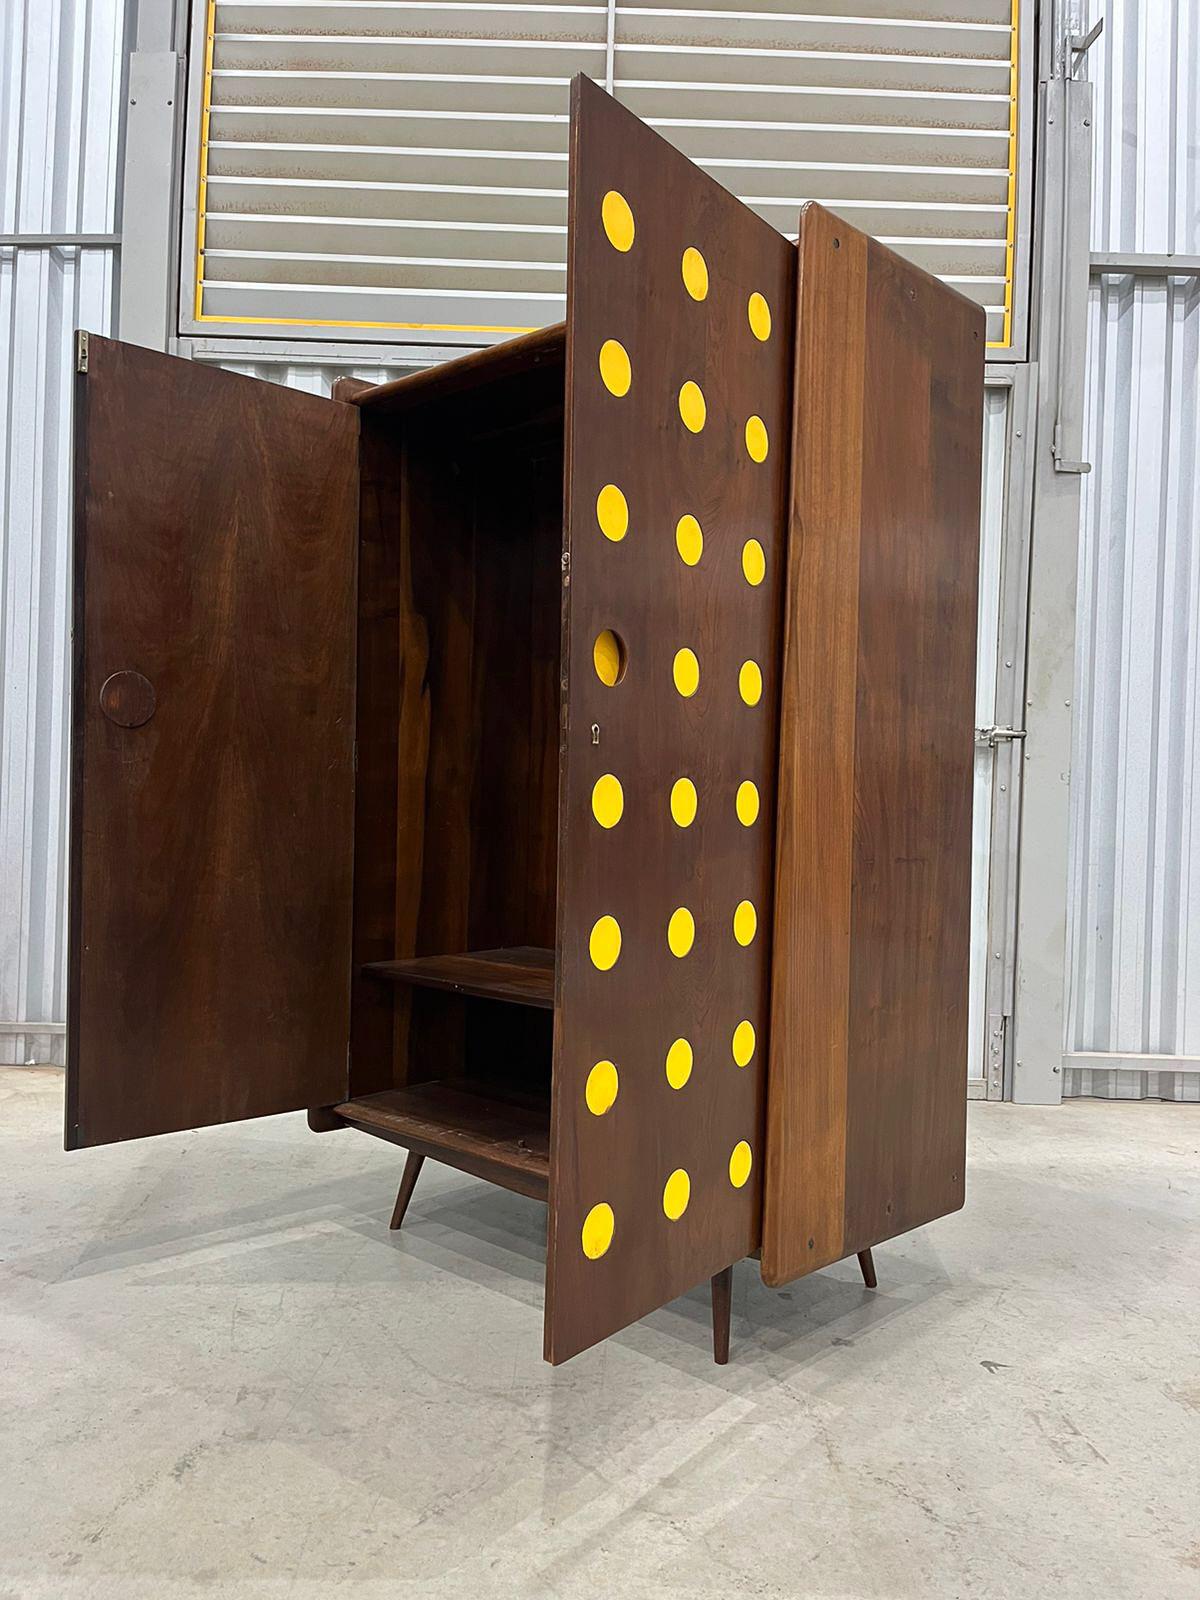 Disponible dès aujourd'hui, cette armoire moderne brésilienne en bois dur, unique en son genre, a été conçue pour être utilisée dans des situations d'urgence.  Moveis Cimo dans les années 50 est un FIND très rare et magnifique !

L'armoire est